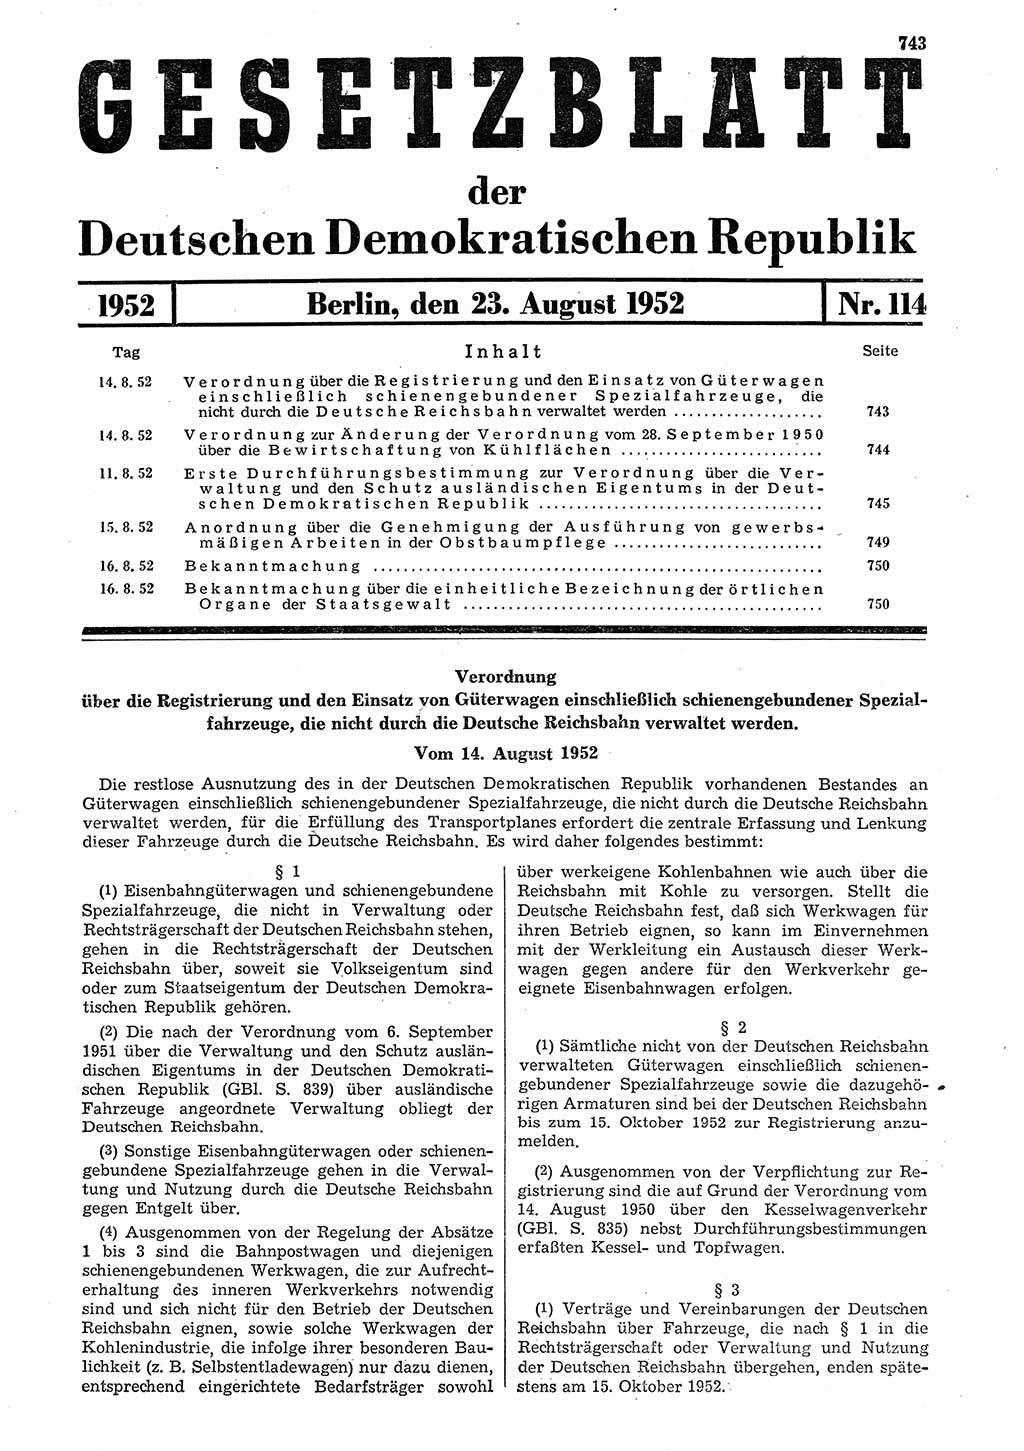 Gesetzblatt (GBl.) der Deutschen Demokratischen Republik (DDR) 1952, Seite 743 (GBl. DDR 1952, S. 743)